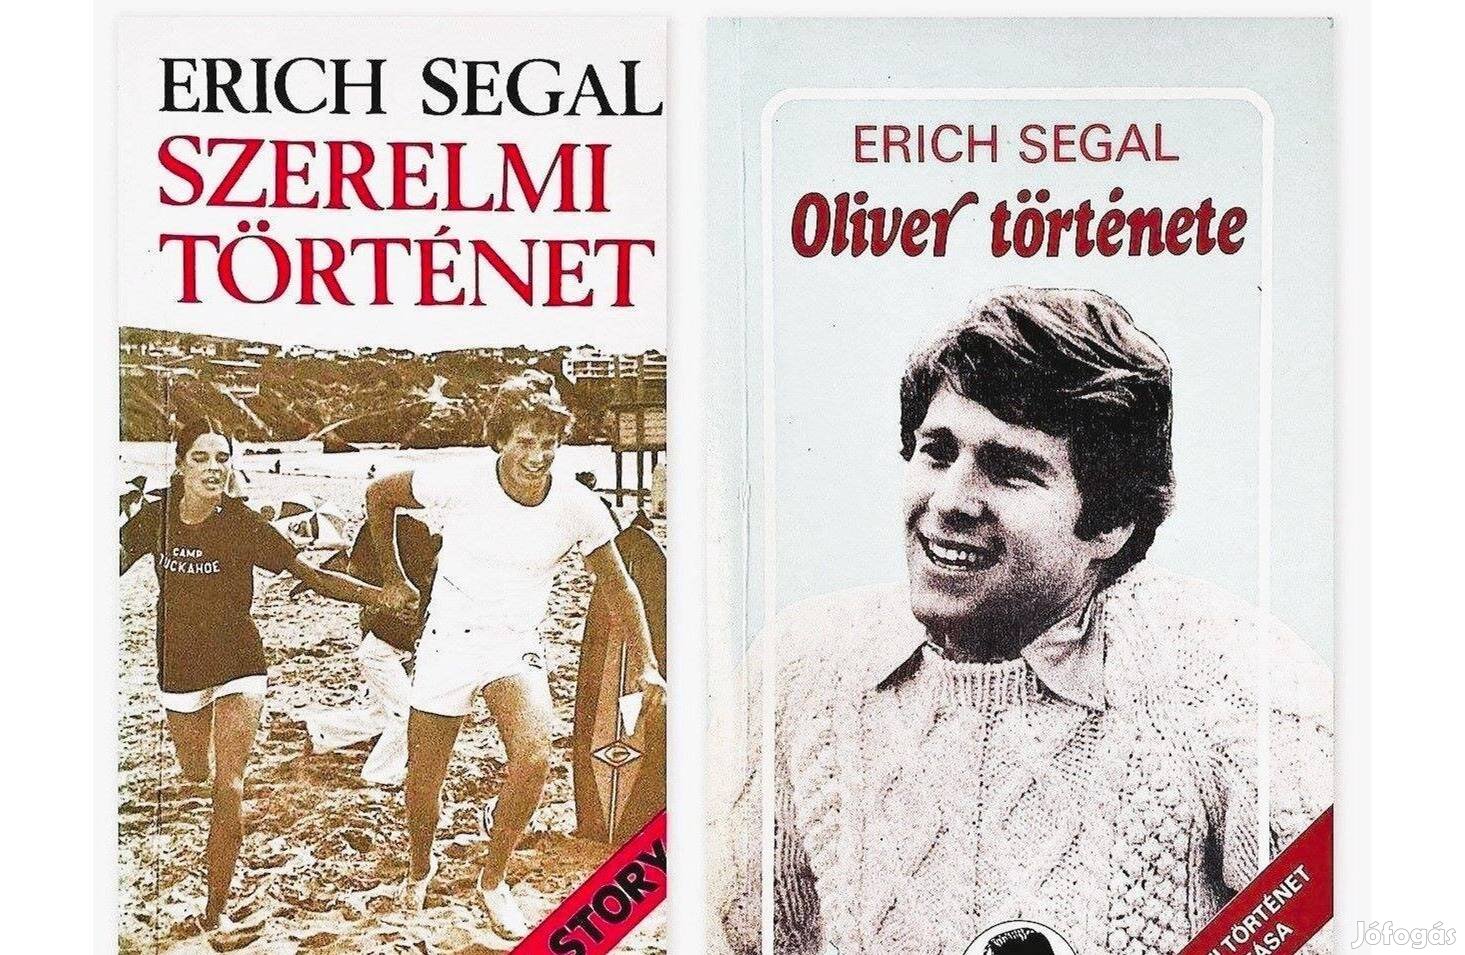 Erich Segal: Szerelmi történet, Oliver Története